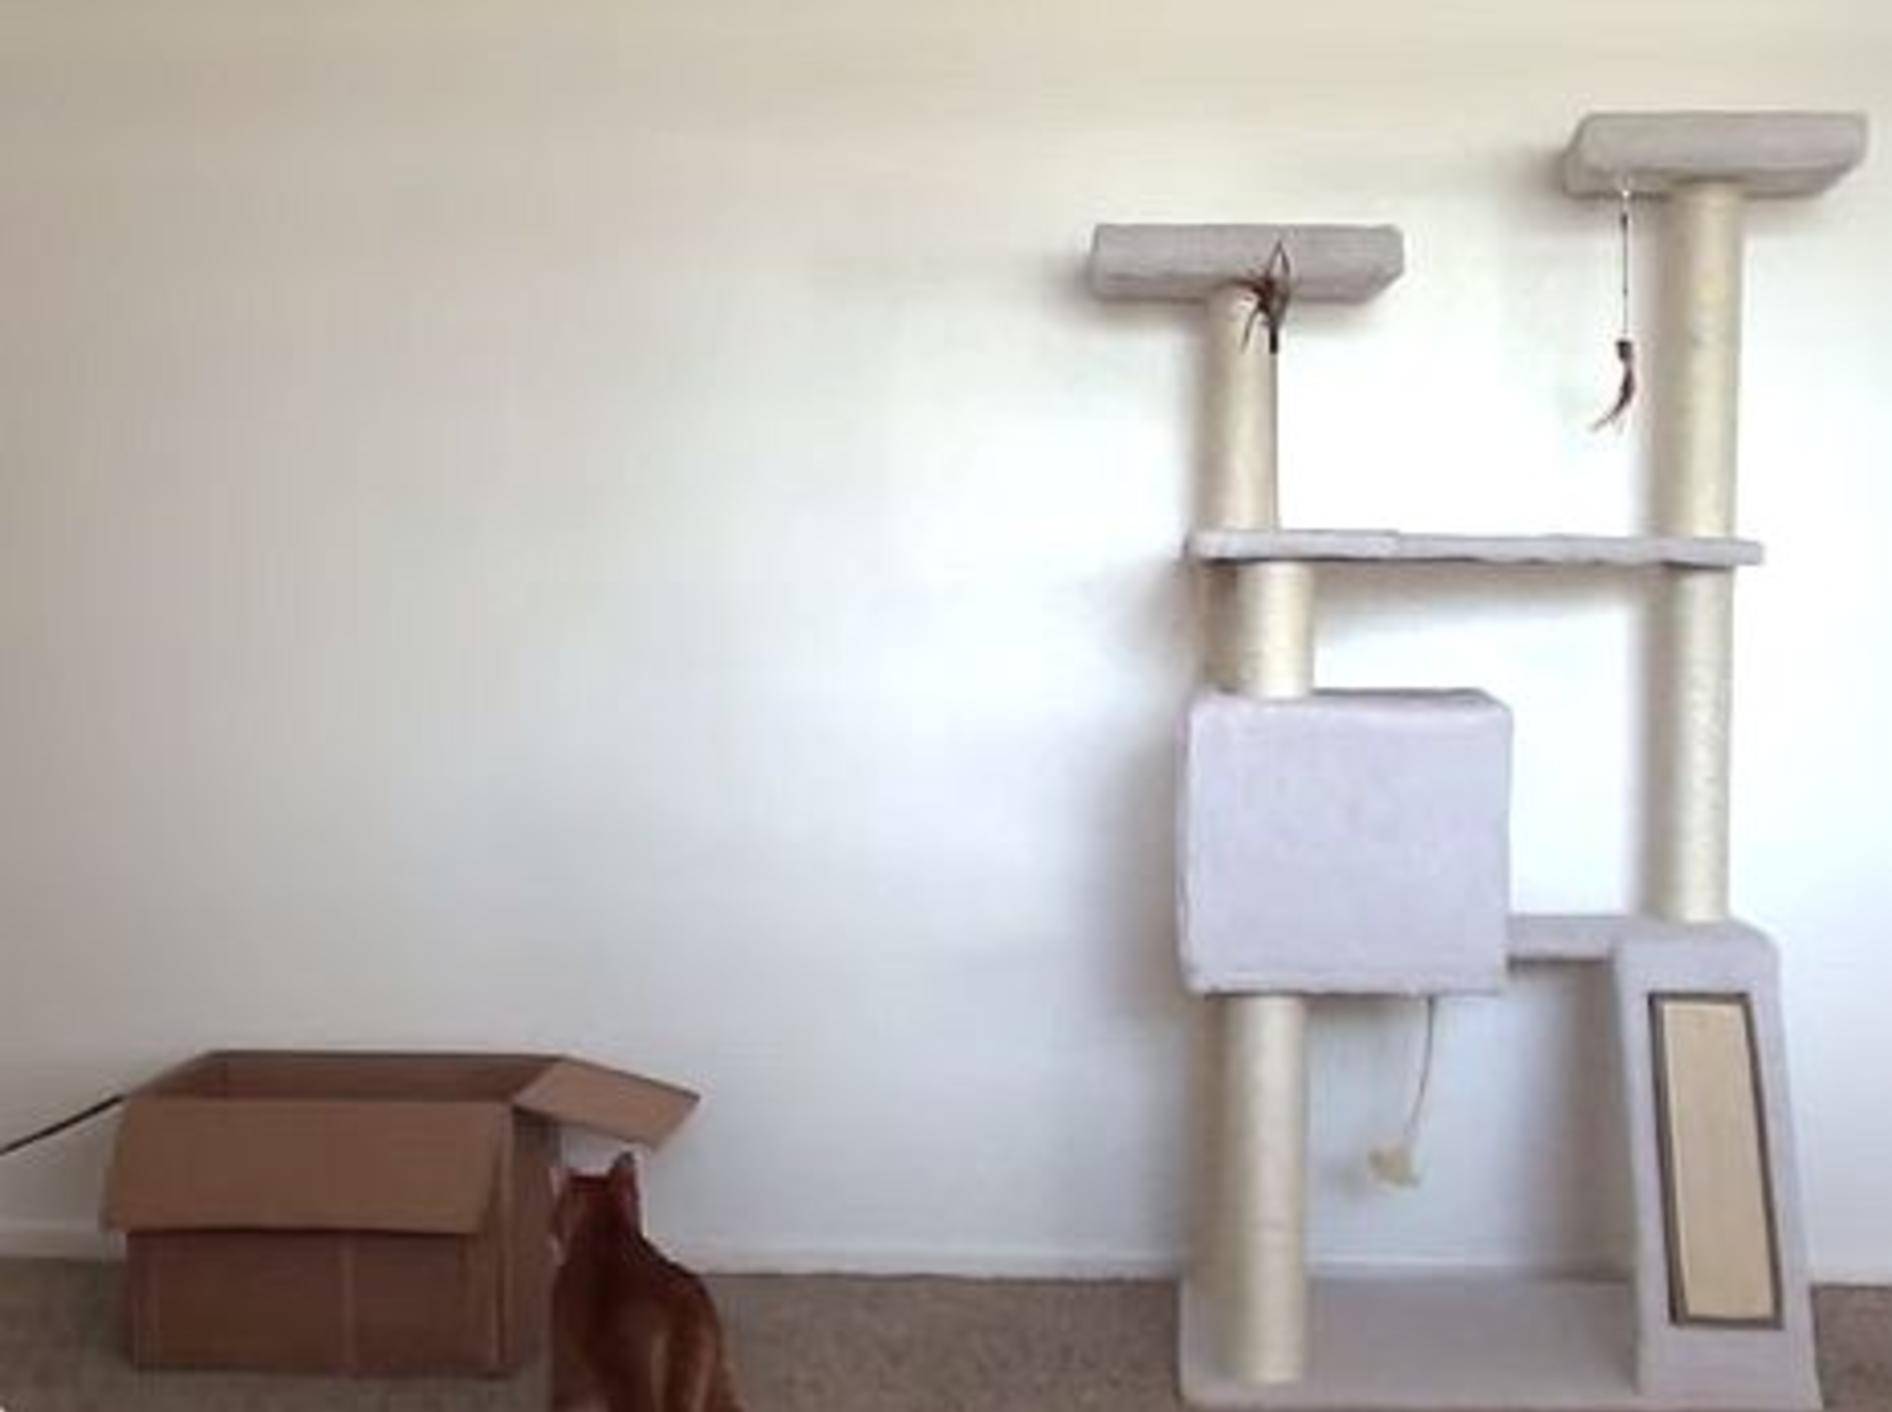 Süße Stubentiger geben Einführung in Katzenlogik – Bild: Youtube / Cole and Marmalade